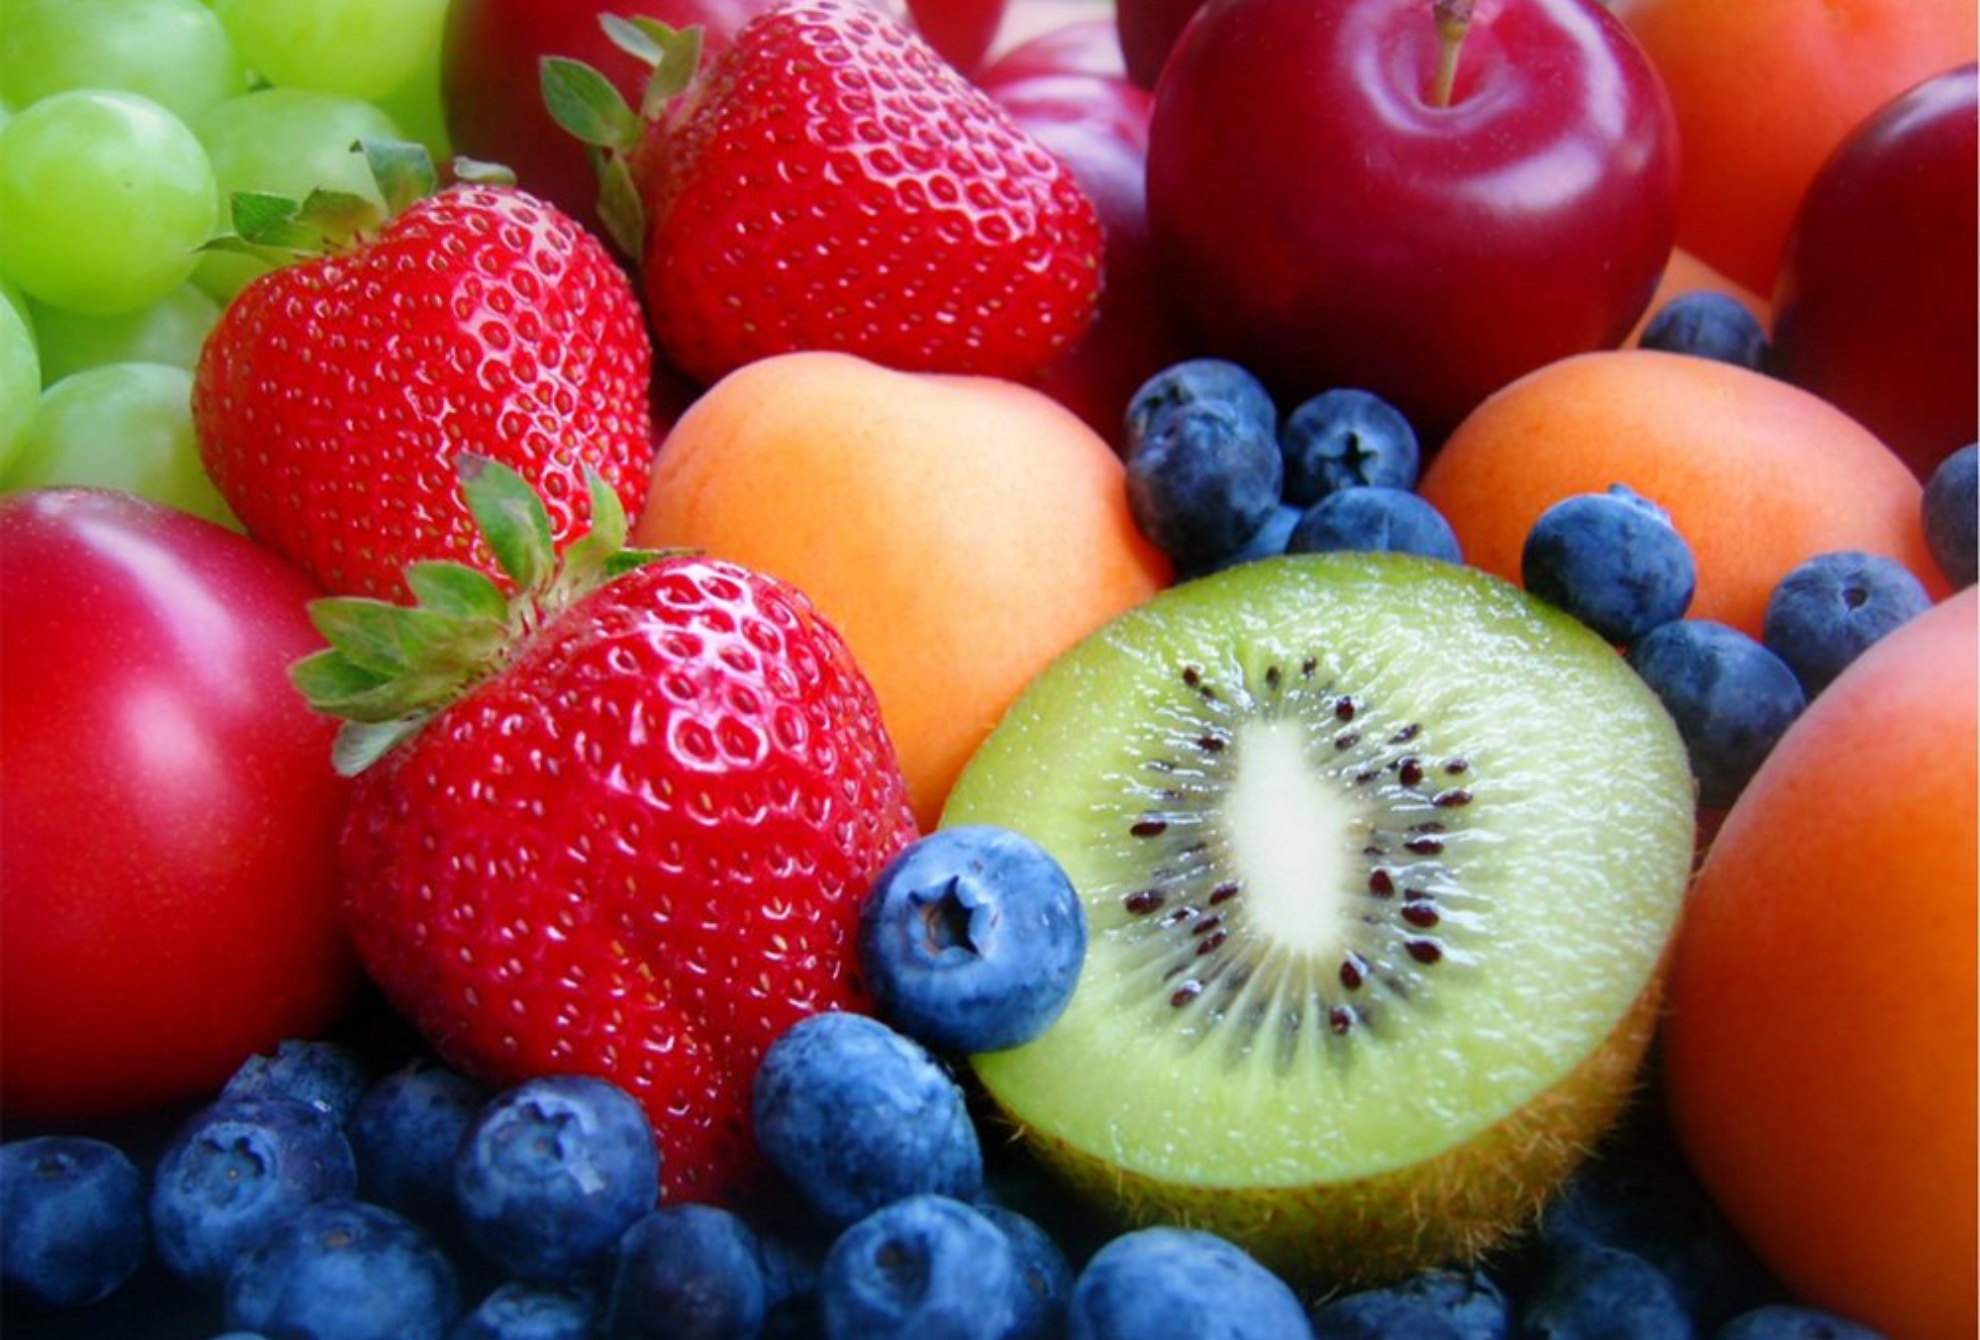 Cules son las mejores frutas para diabticos?